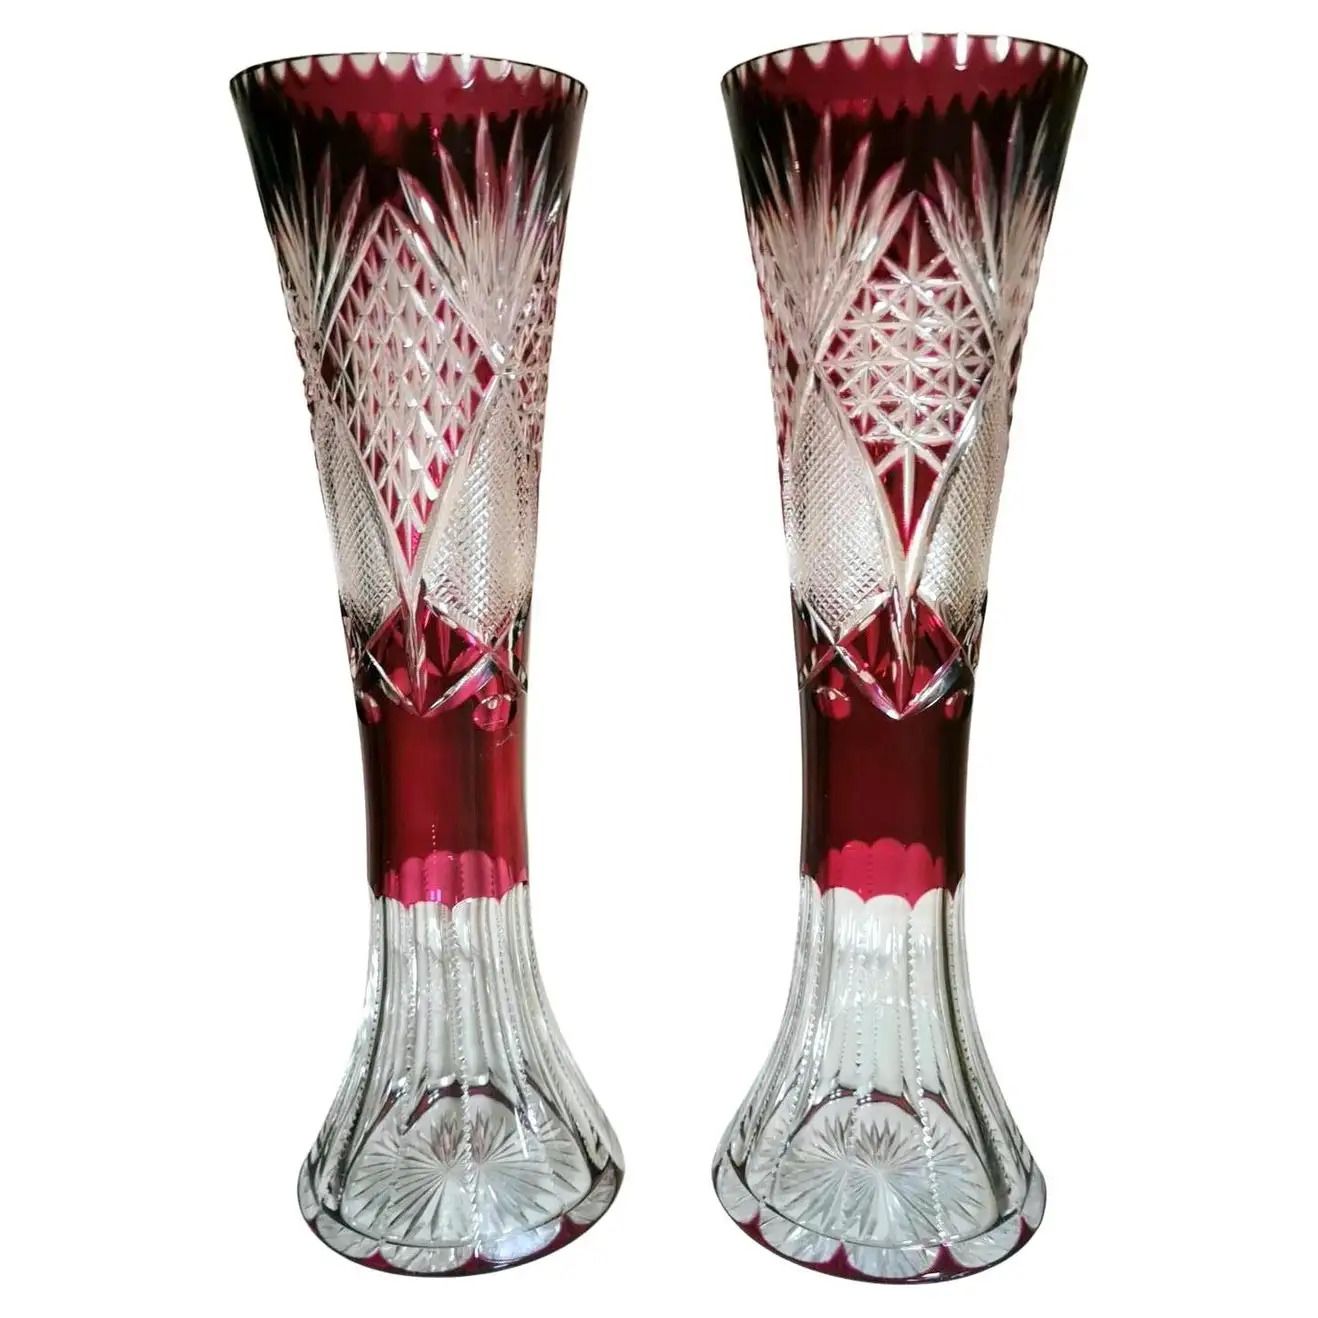 https://artorigo.com/ao_products/40438/l/decorative-objects-vases-1940-1949-art-deco-bazaar-sas-furniture-274445.jpeg